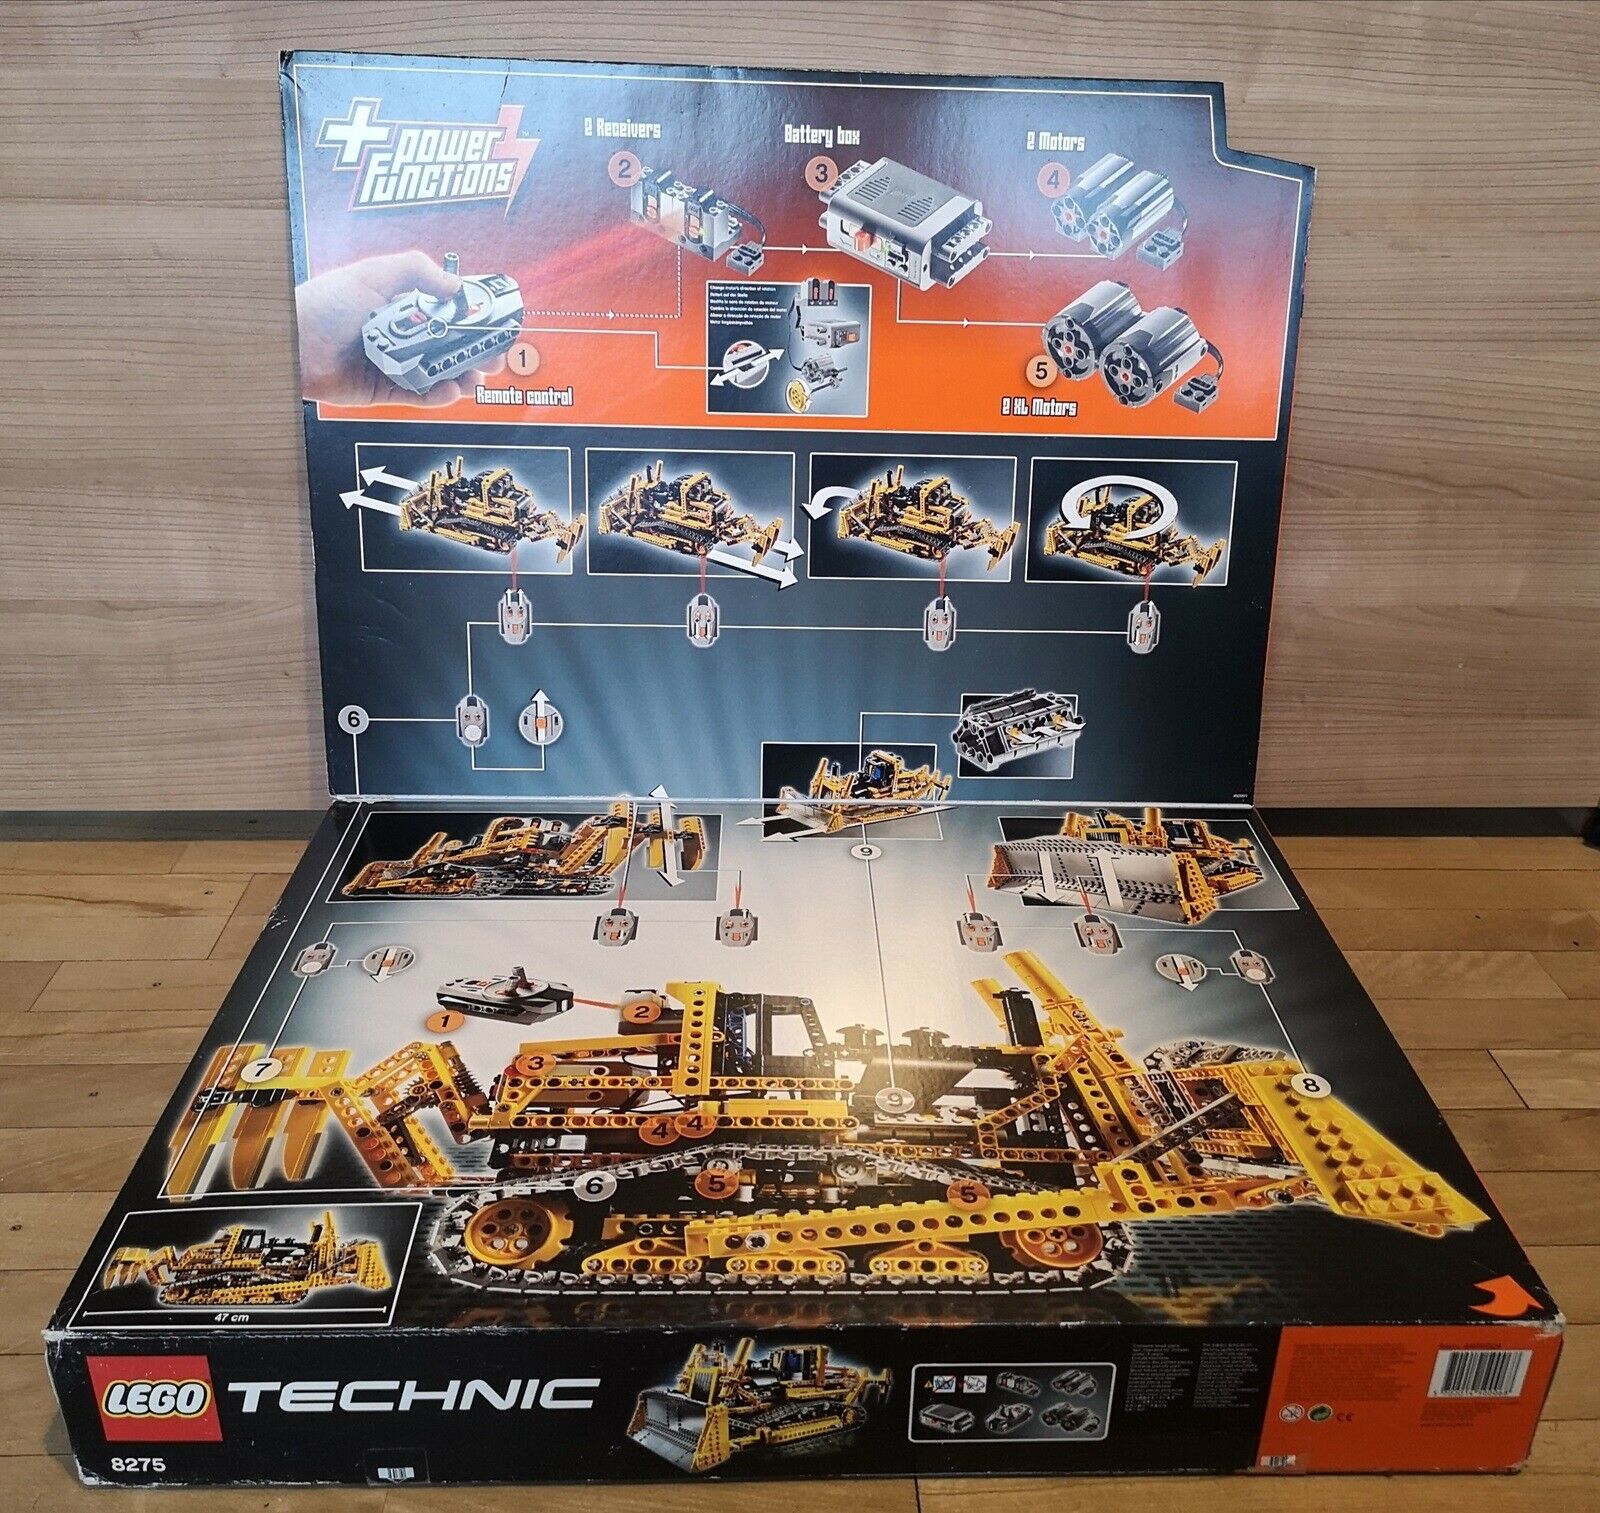 pence niveau spion Lego Technic, 8275 – dba.dk – Køb og Salg af Nyt og Brugt